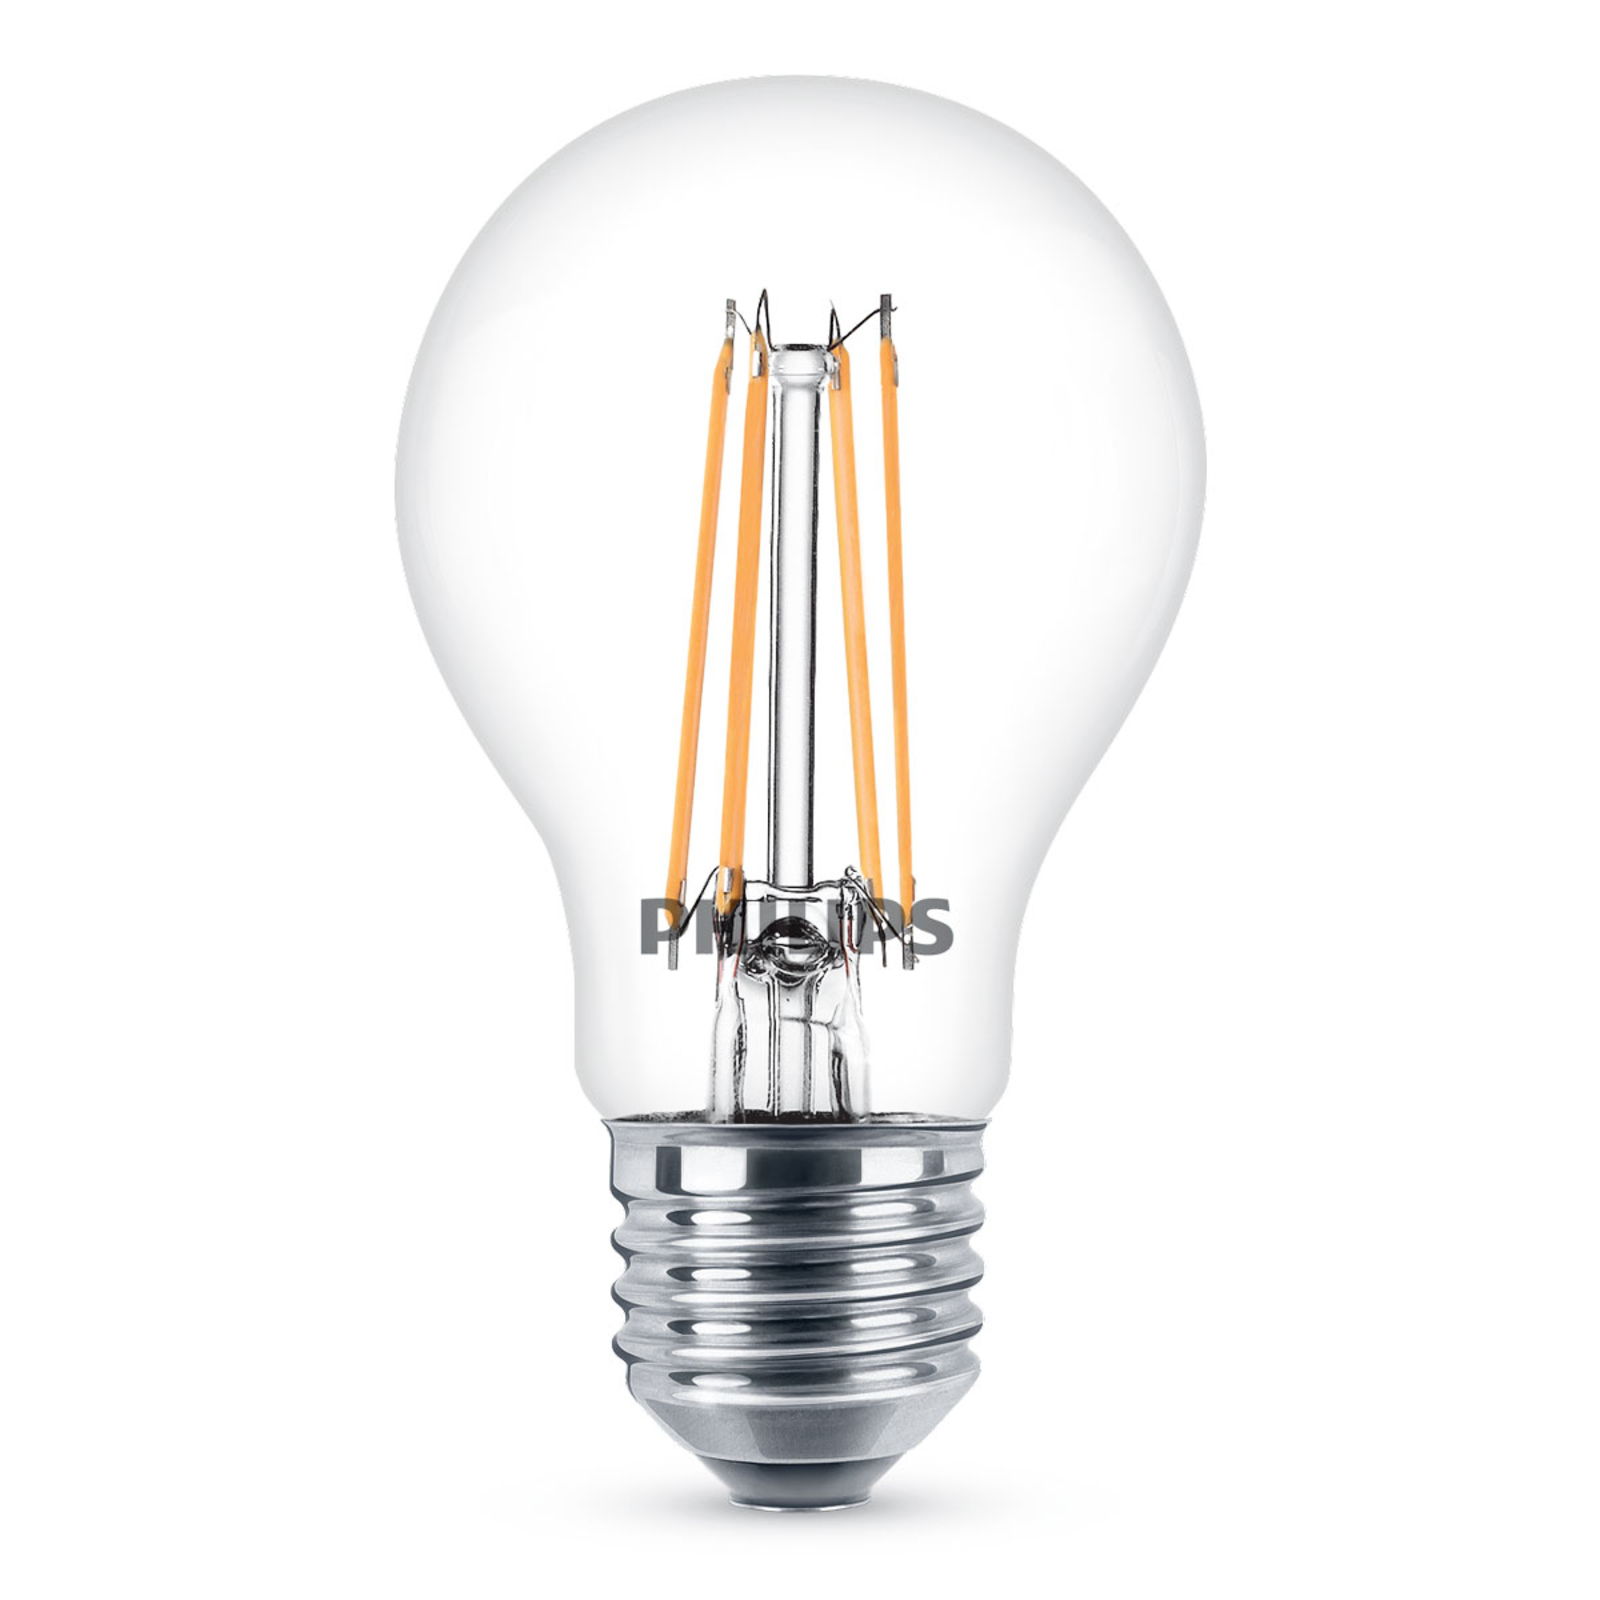 Philips E27 7W 827 filament LED bulb